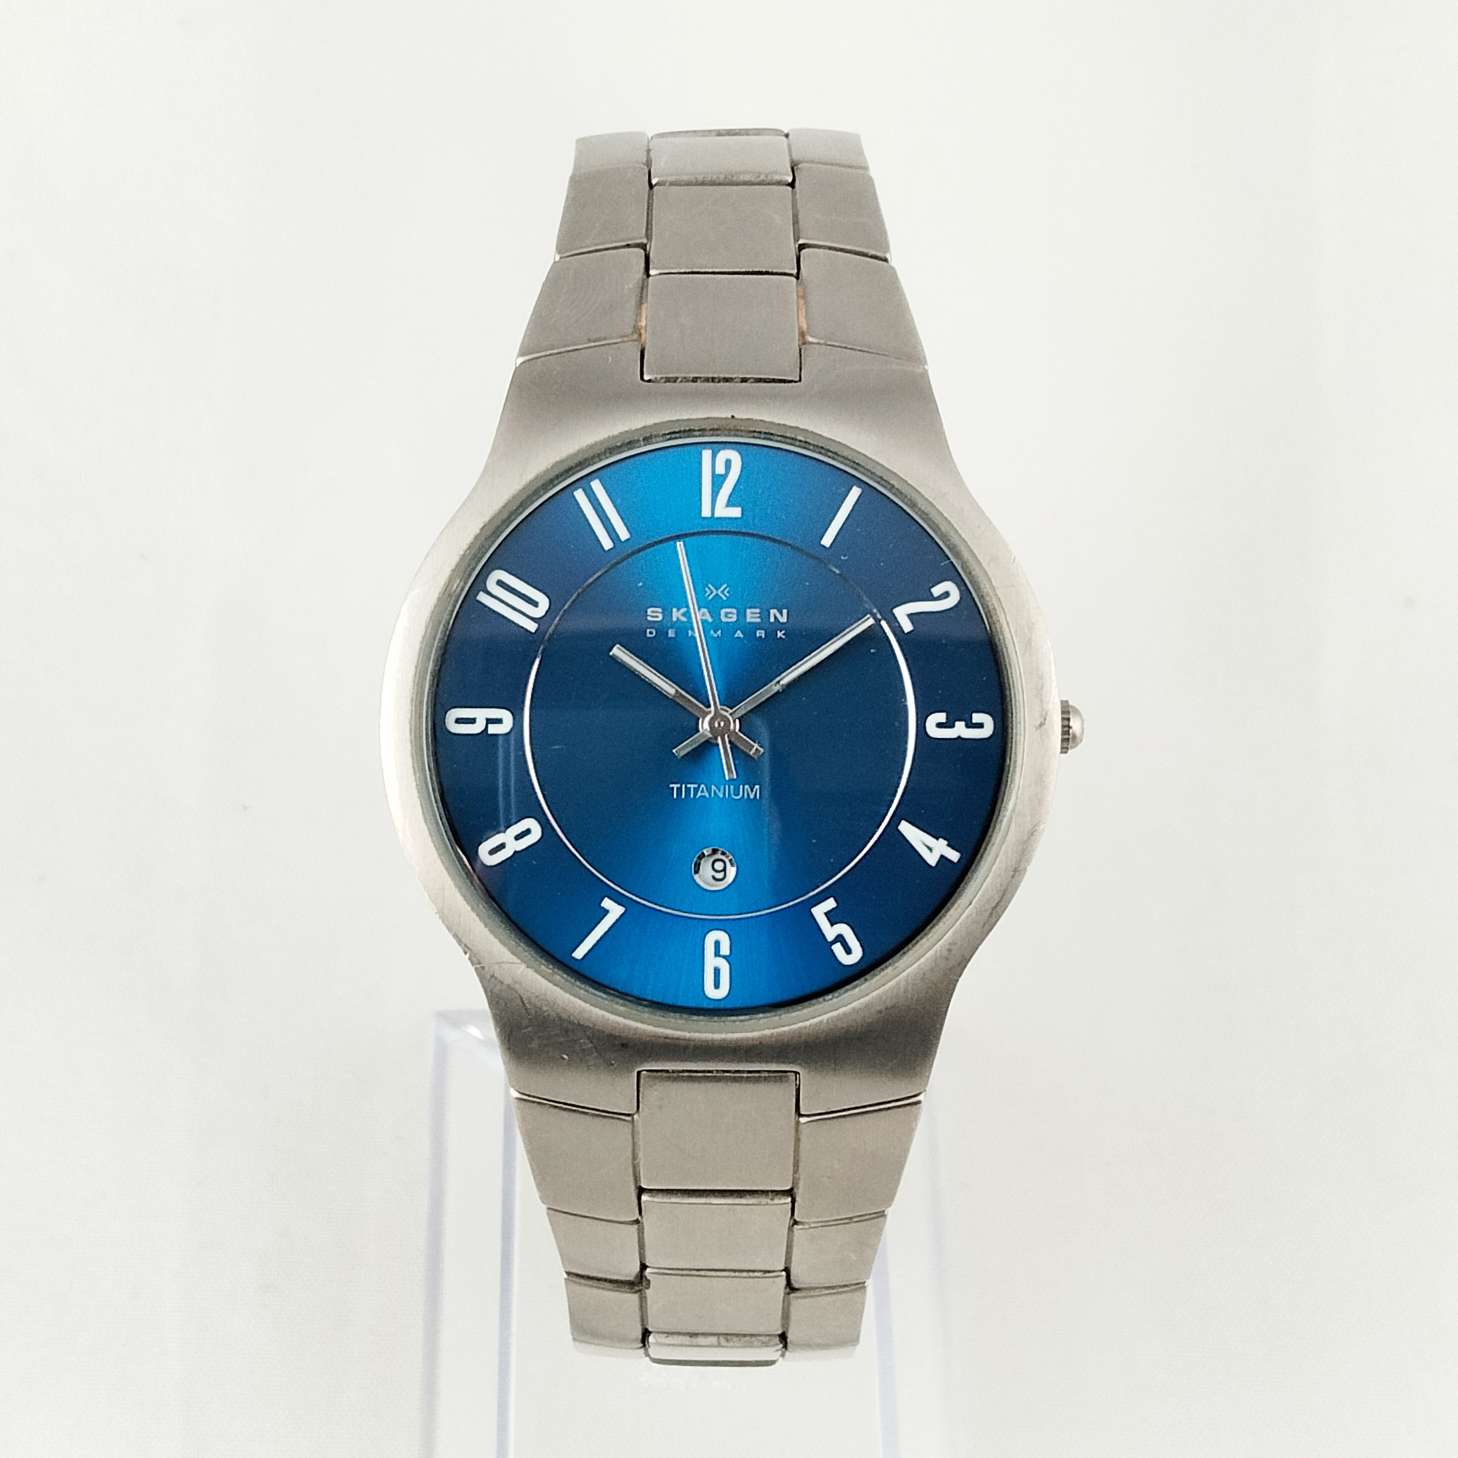 Skagen Oversized Men's Watch, Blue Dial, Bracelet Strap